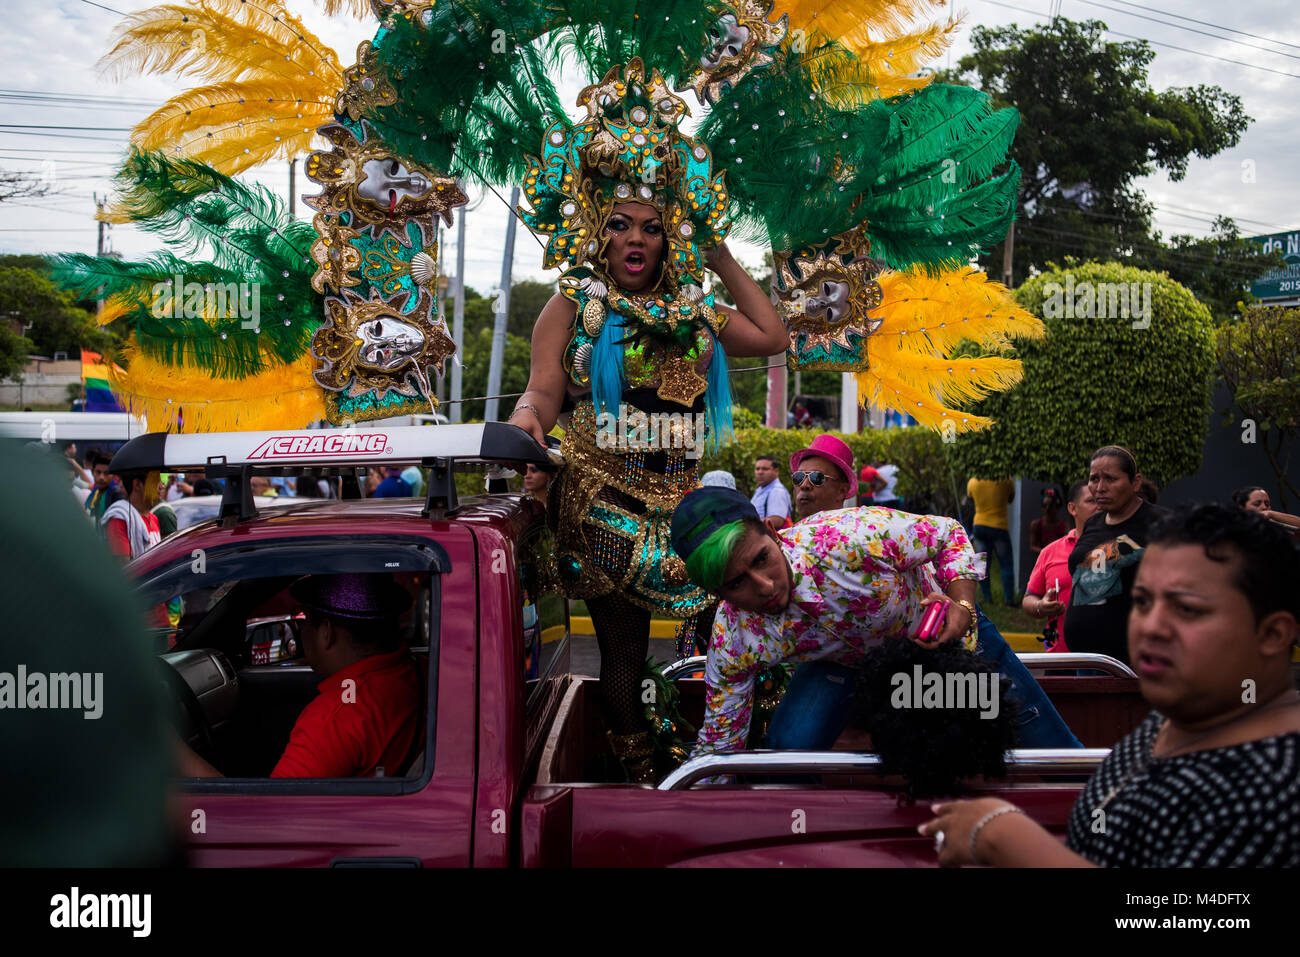 A gay pride parade through the center of Managua, Nicaragua. Stock Photo